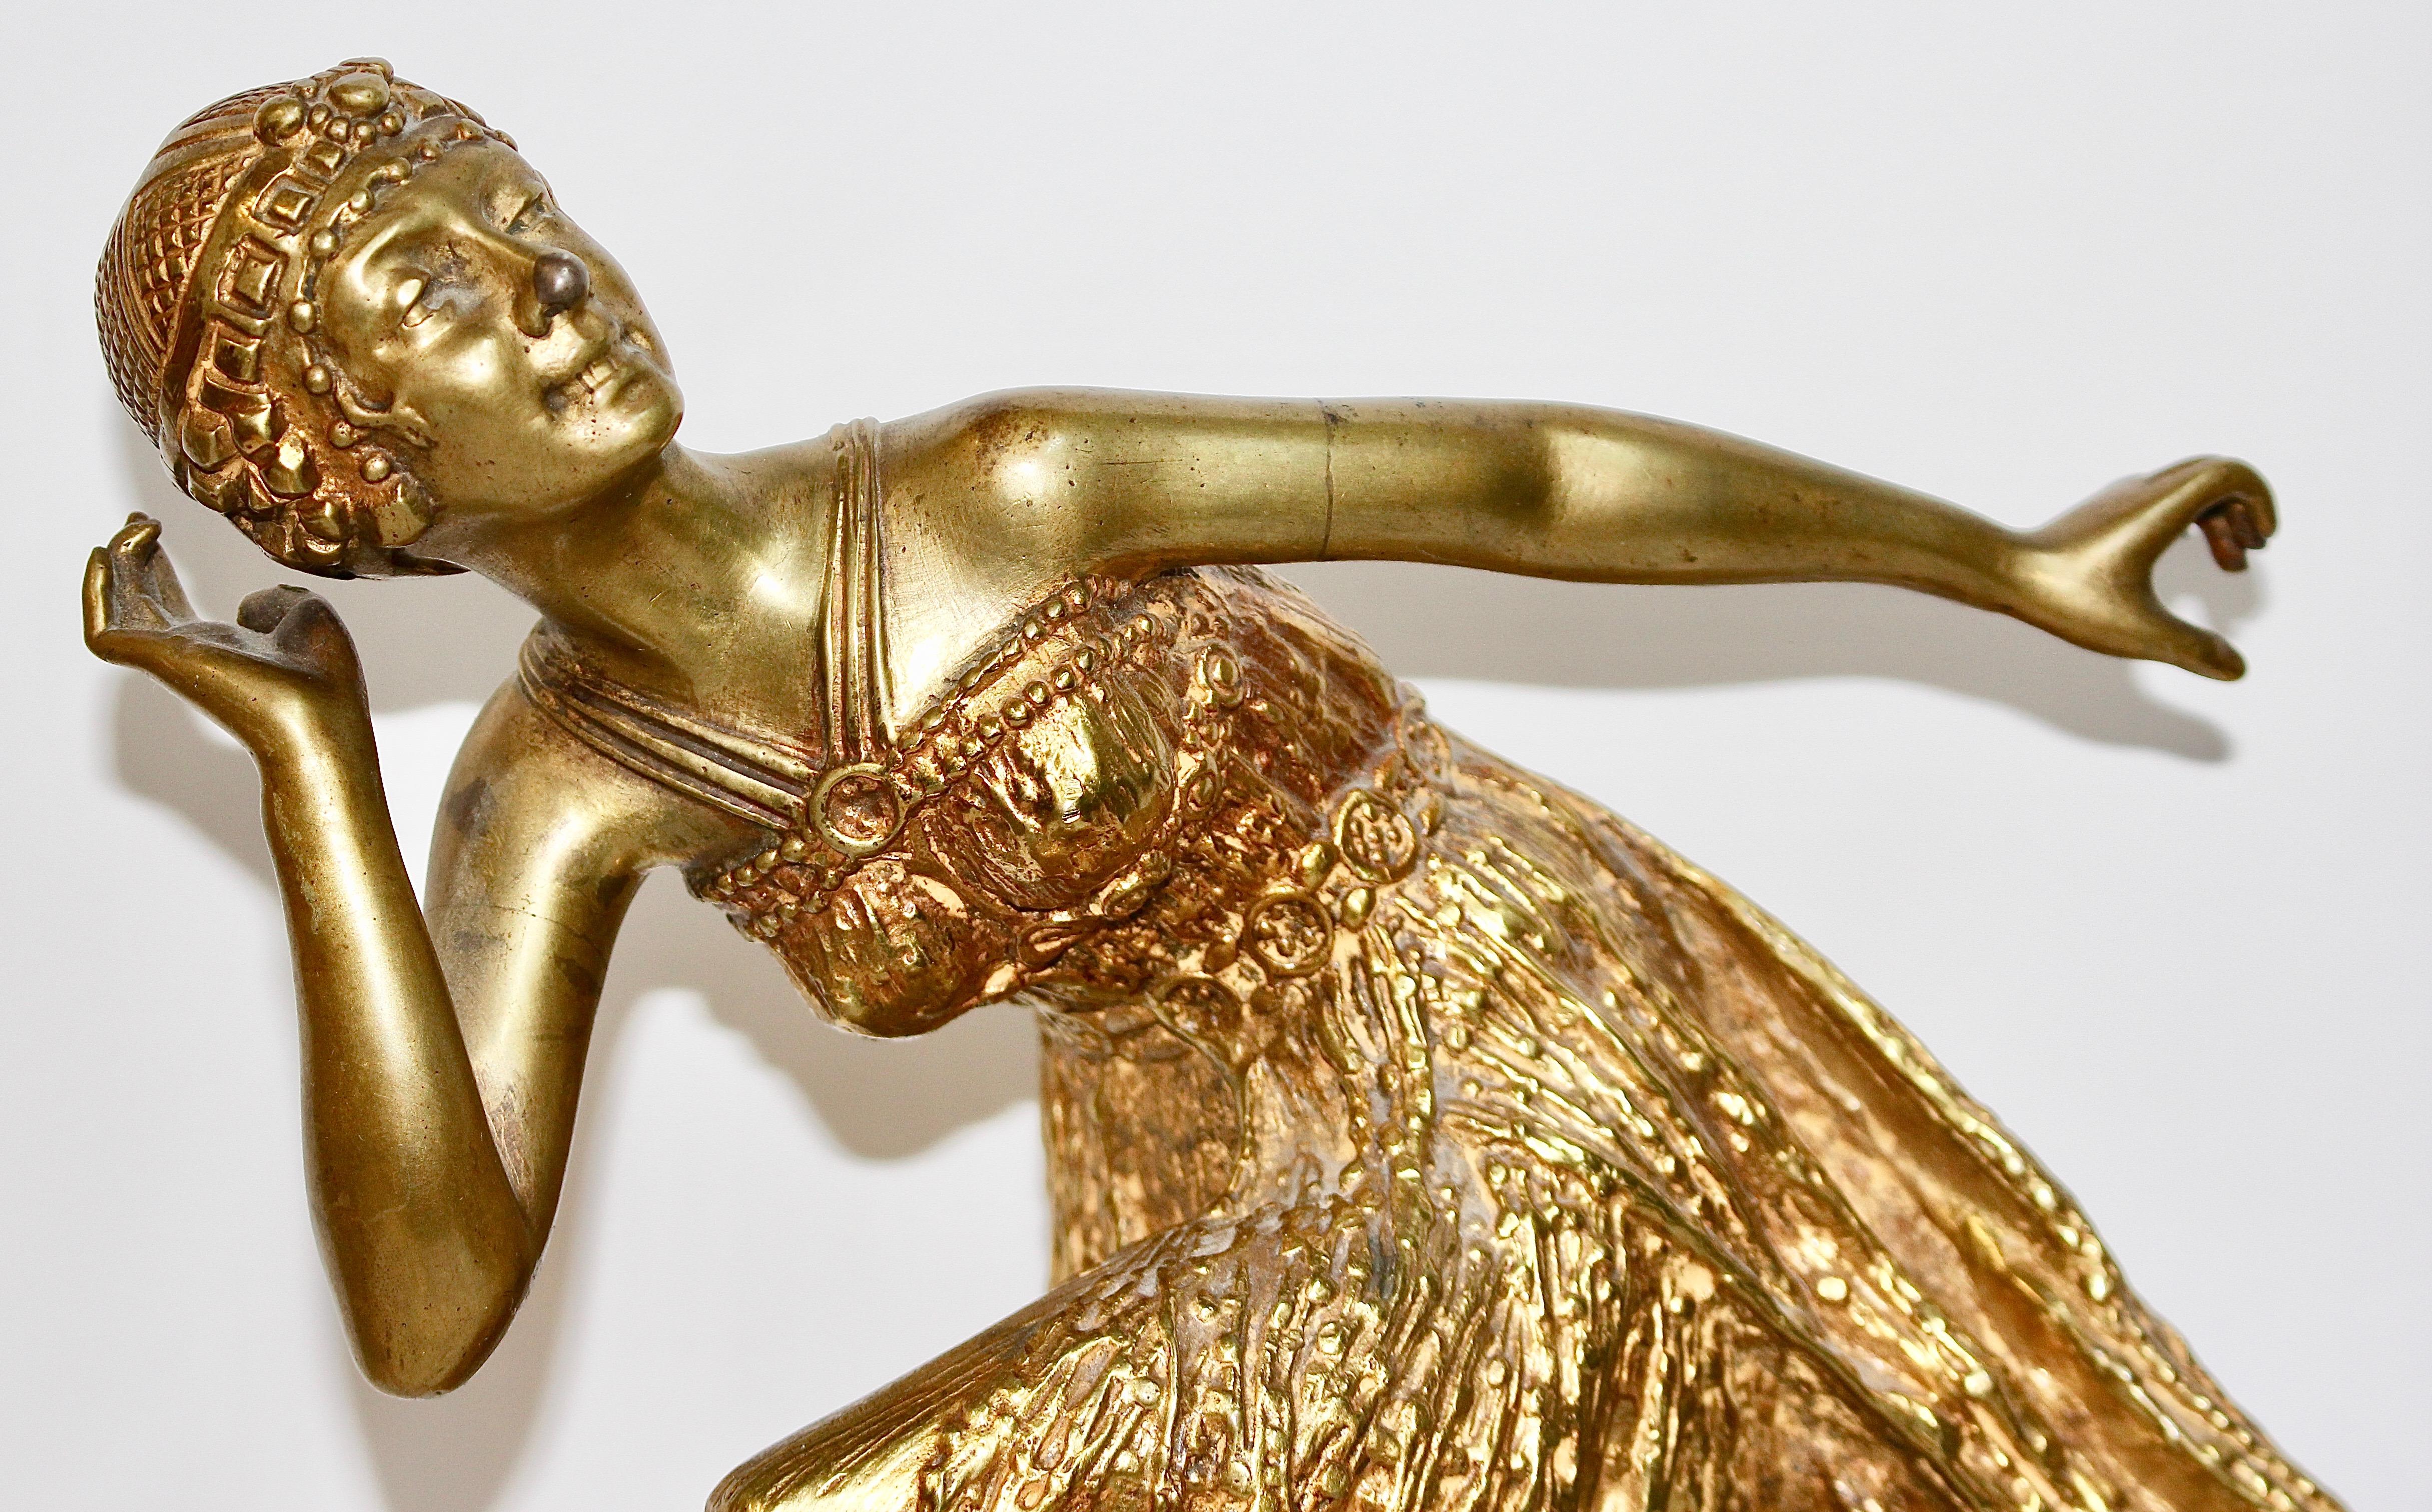 Sculpture ancienne en bronze, enchanteresse et décorative.
Sculpture ancienne en bronze doré au feu. Art déco, Nouveau dame dansante. 